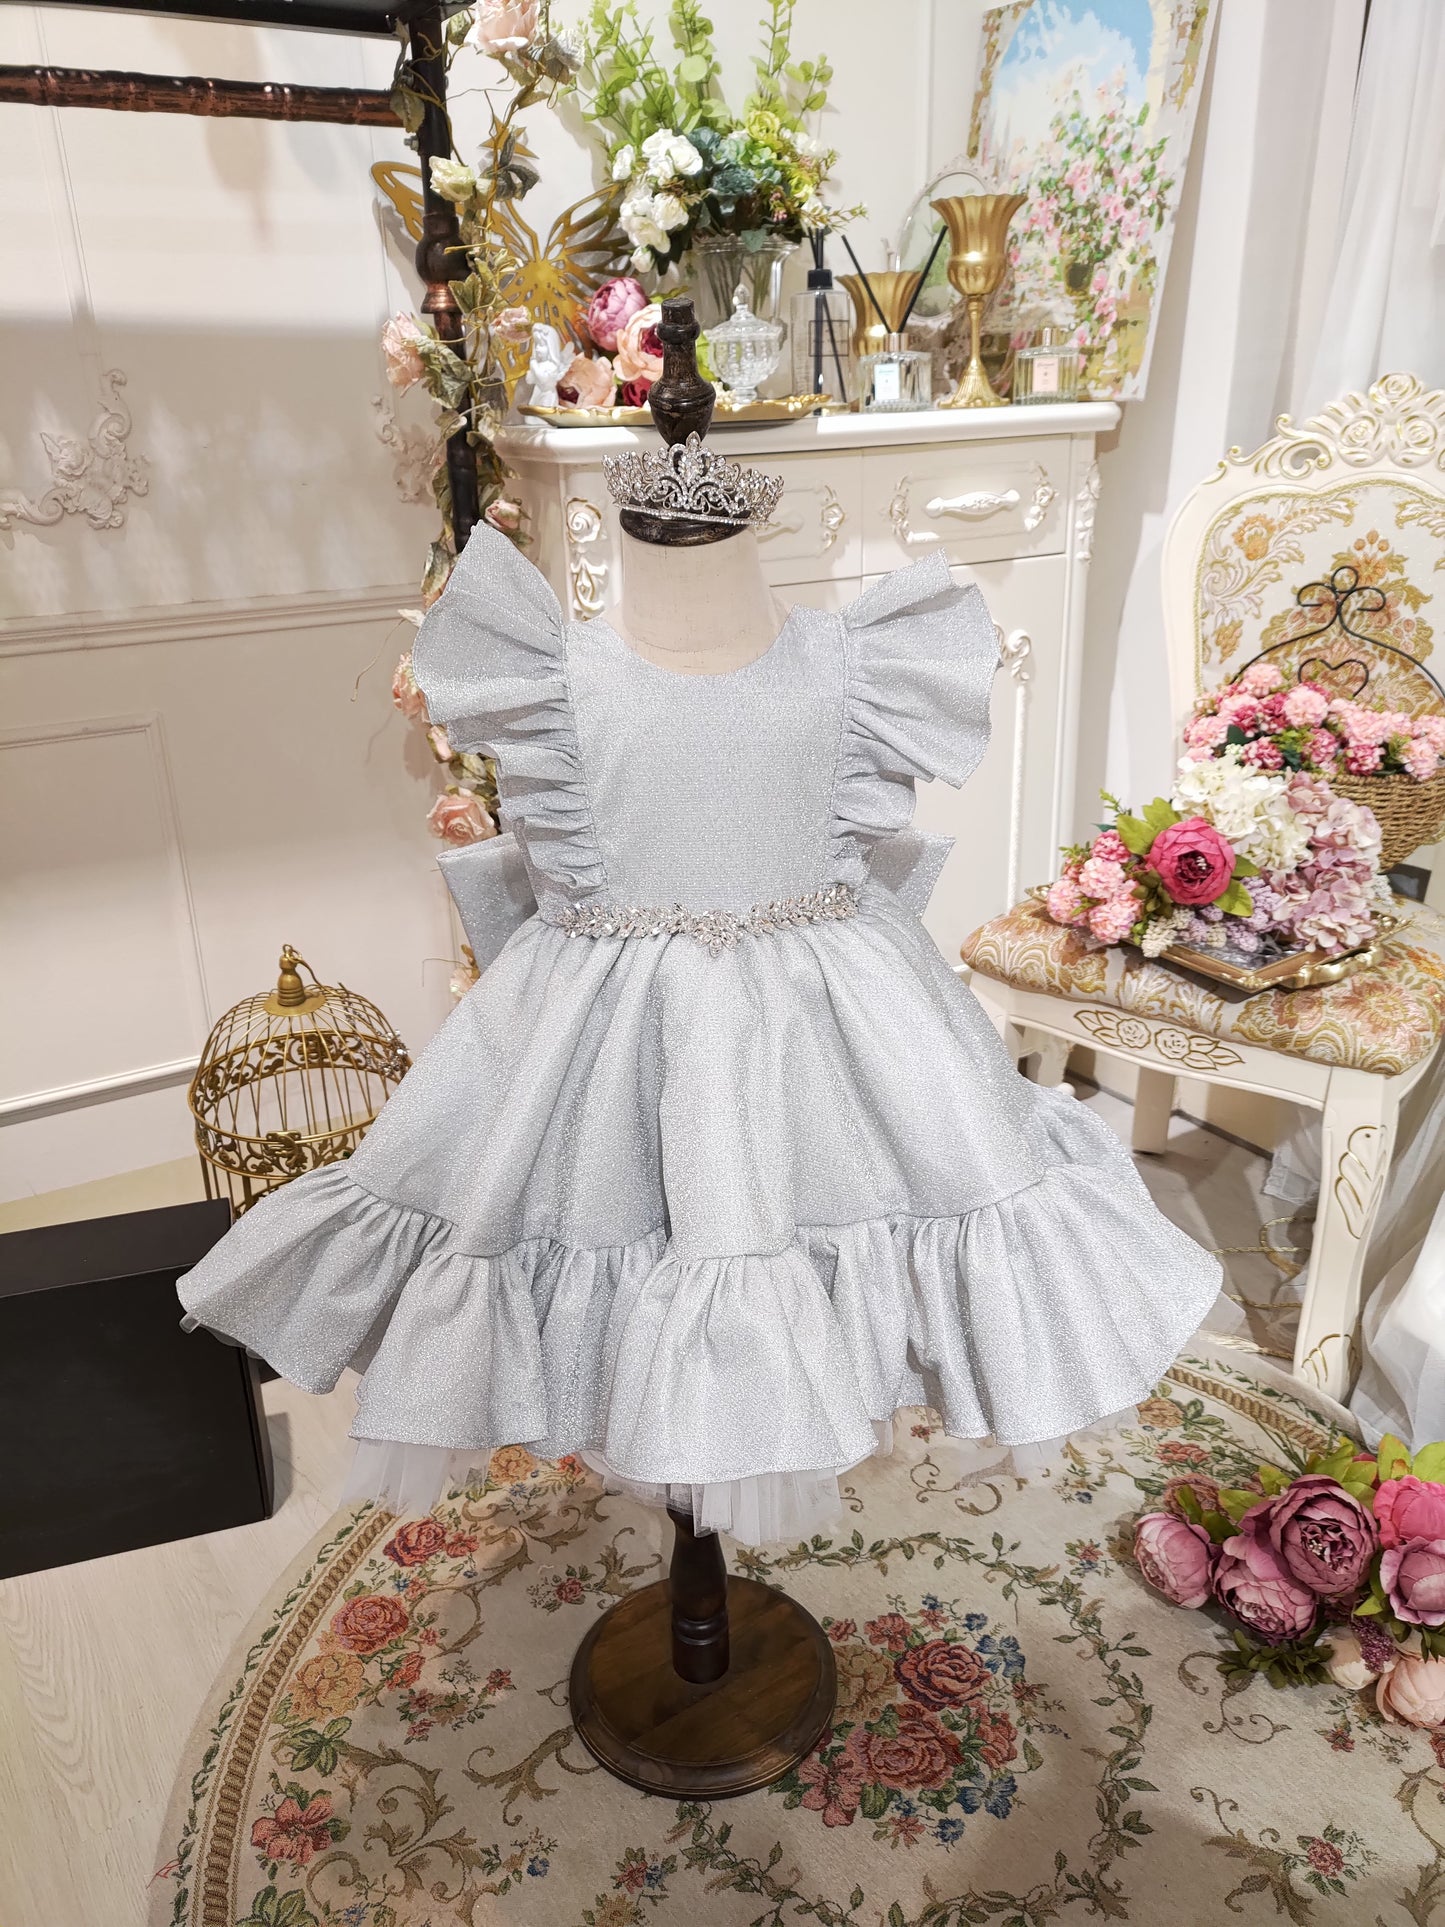 Diamond Foxtrot - Silver White Lurex Dress